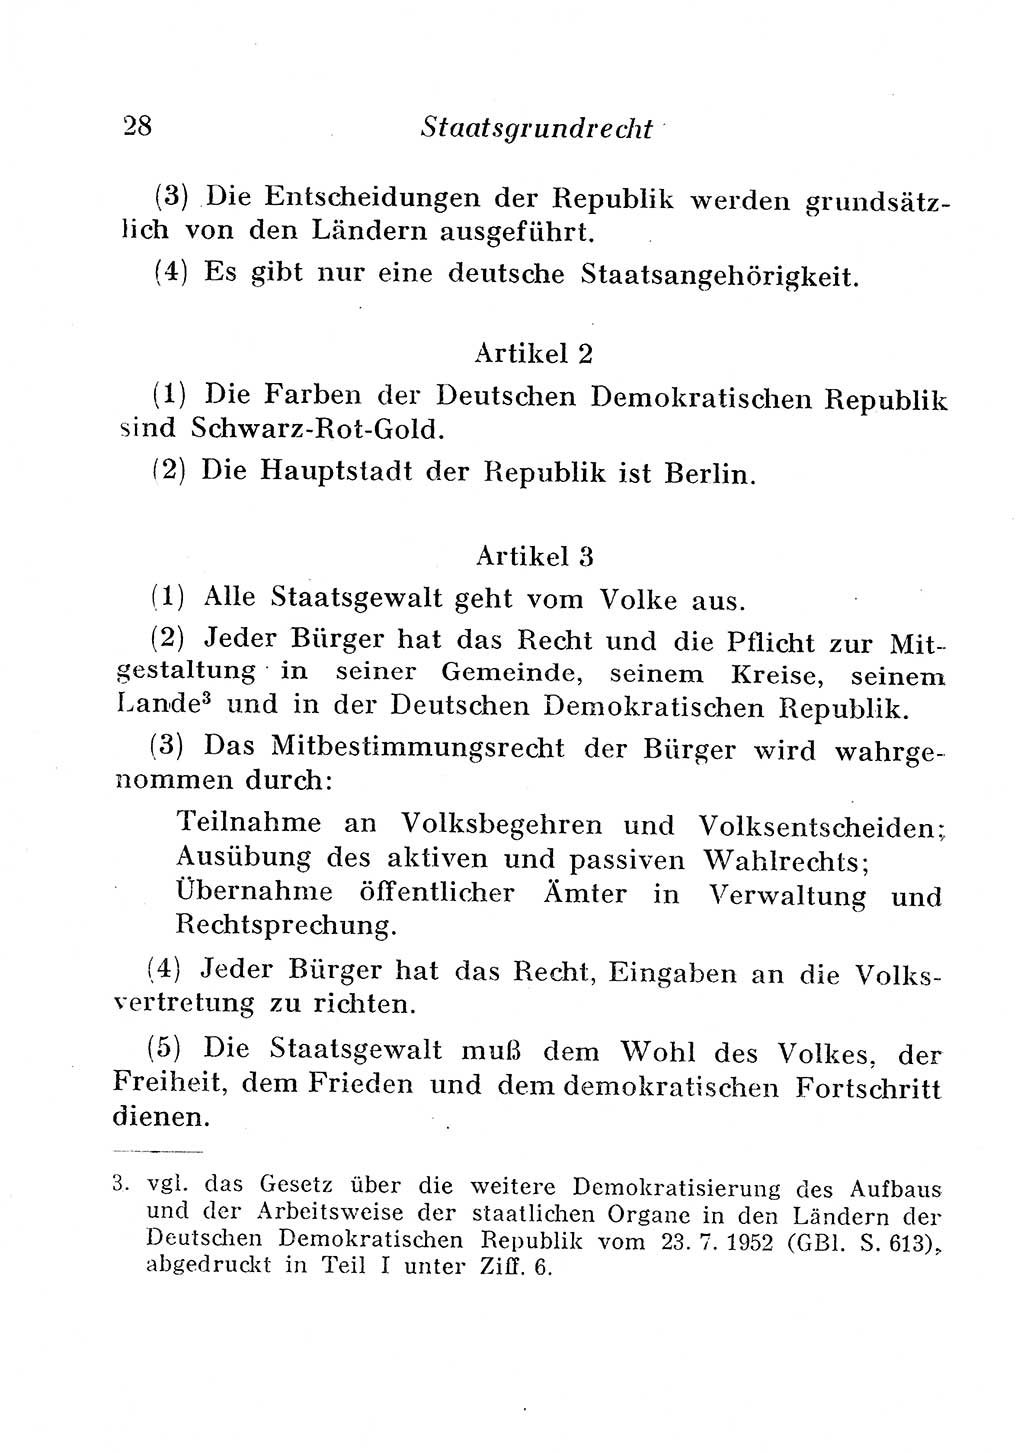 Staats- und verwaltungsrechtliche Gesetze der Deutschen Demokratischen Republik (DDR) 1958, Seite 28 (StVerwR Ges. DDR 1958, S. 28)